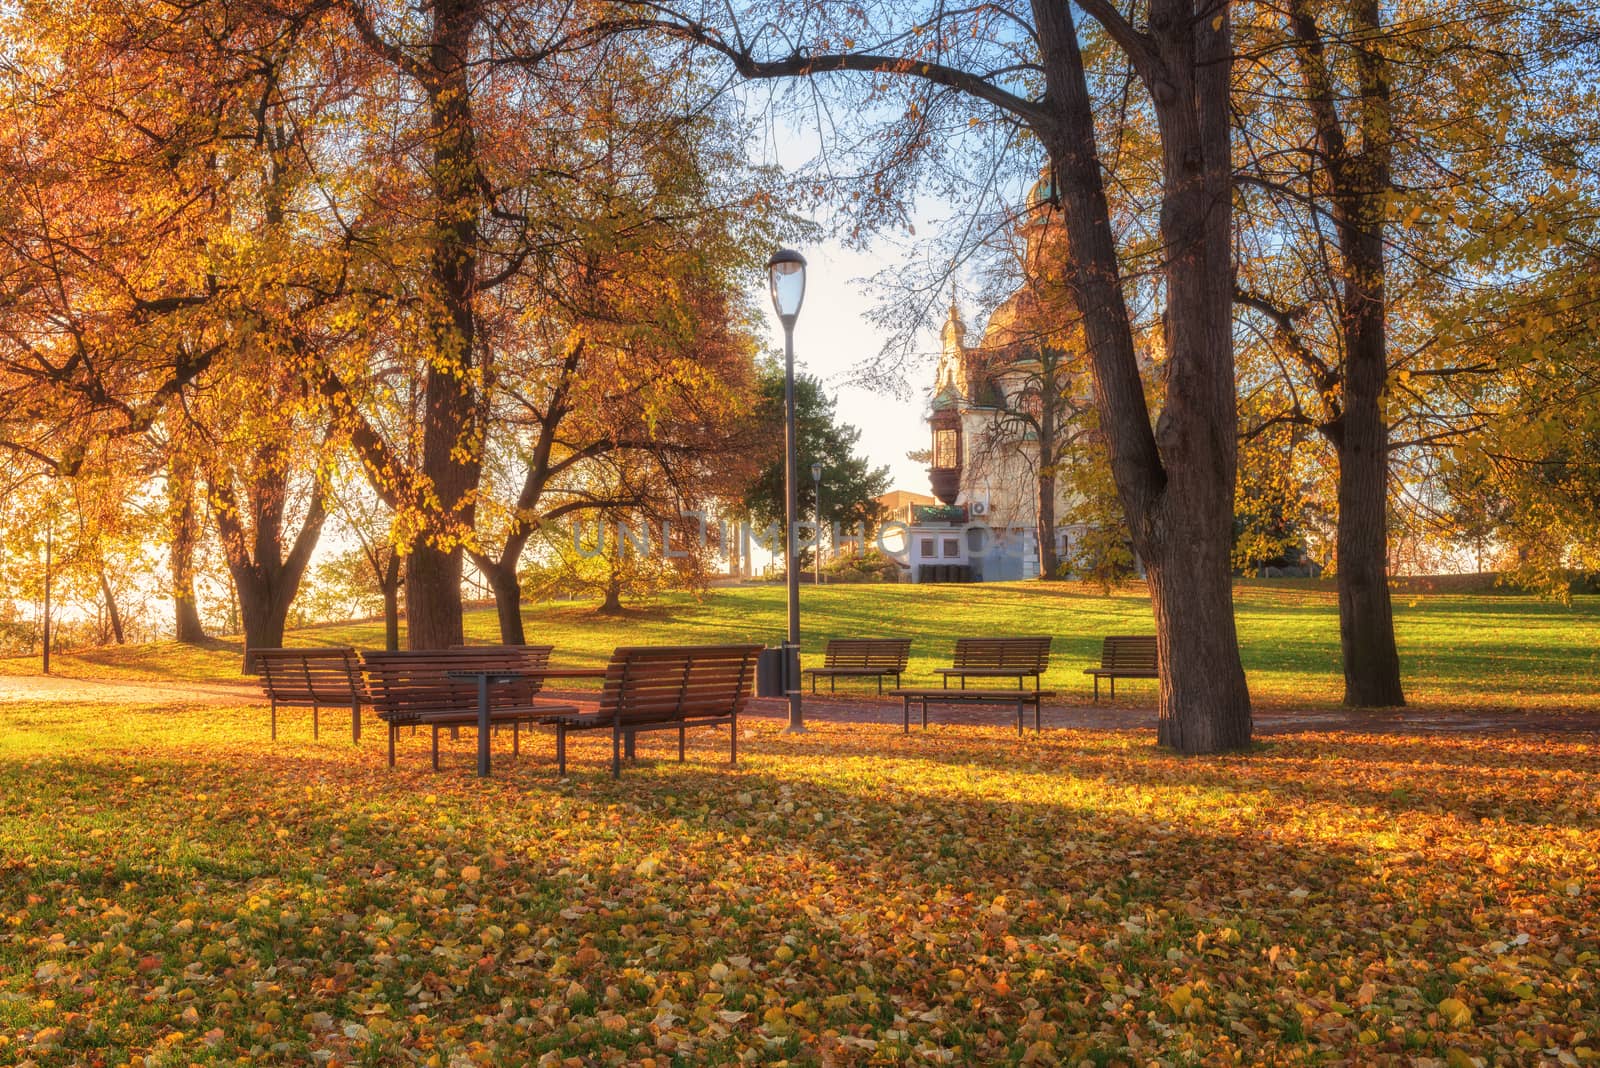 Autumn in Prague, favorite tourist destination Letna park (Letenske sady), Czech Republic by LaraUhryn